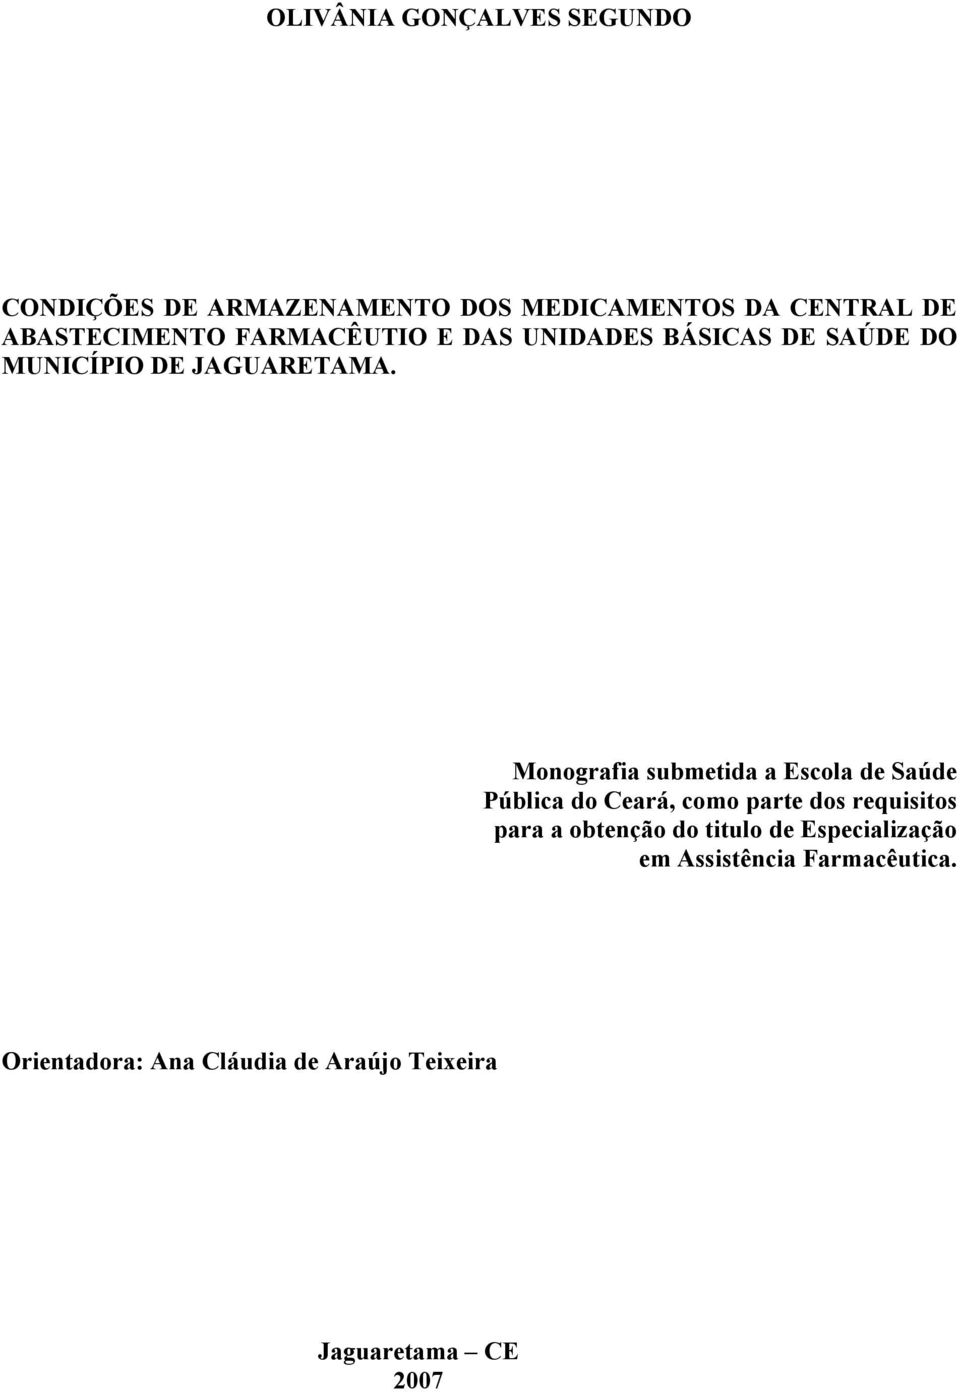 Monografia submetida a Escola de Saúde Pública do Ceará, como parte dos requisitos para a